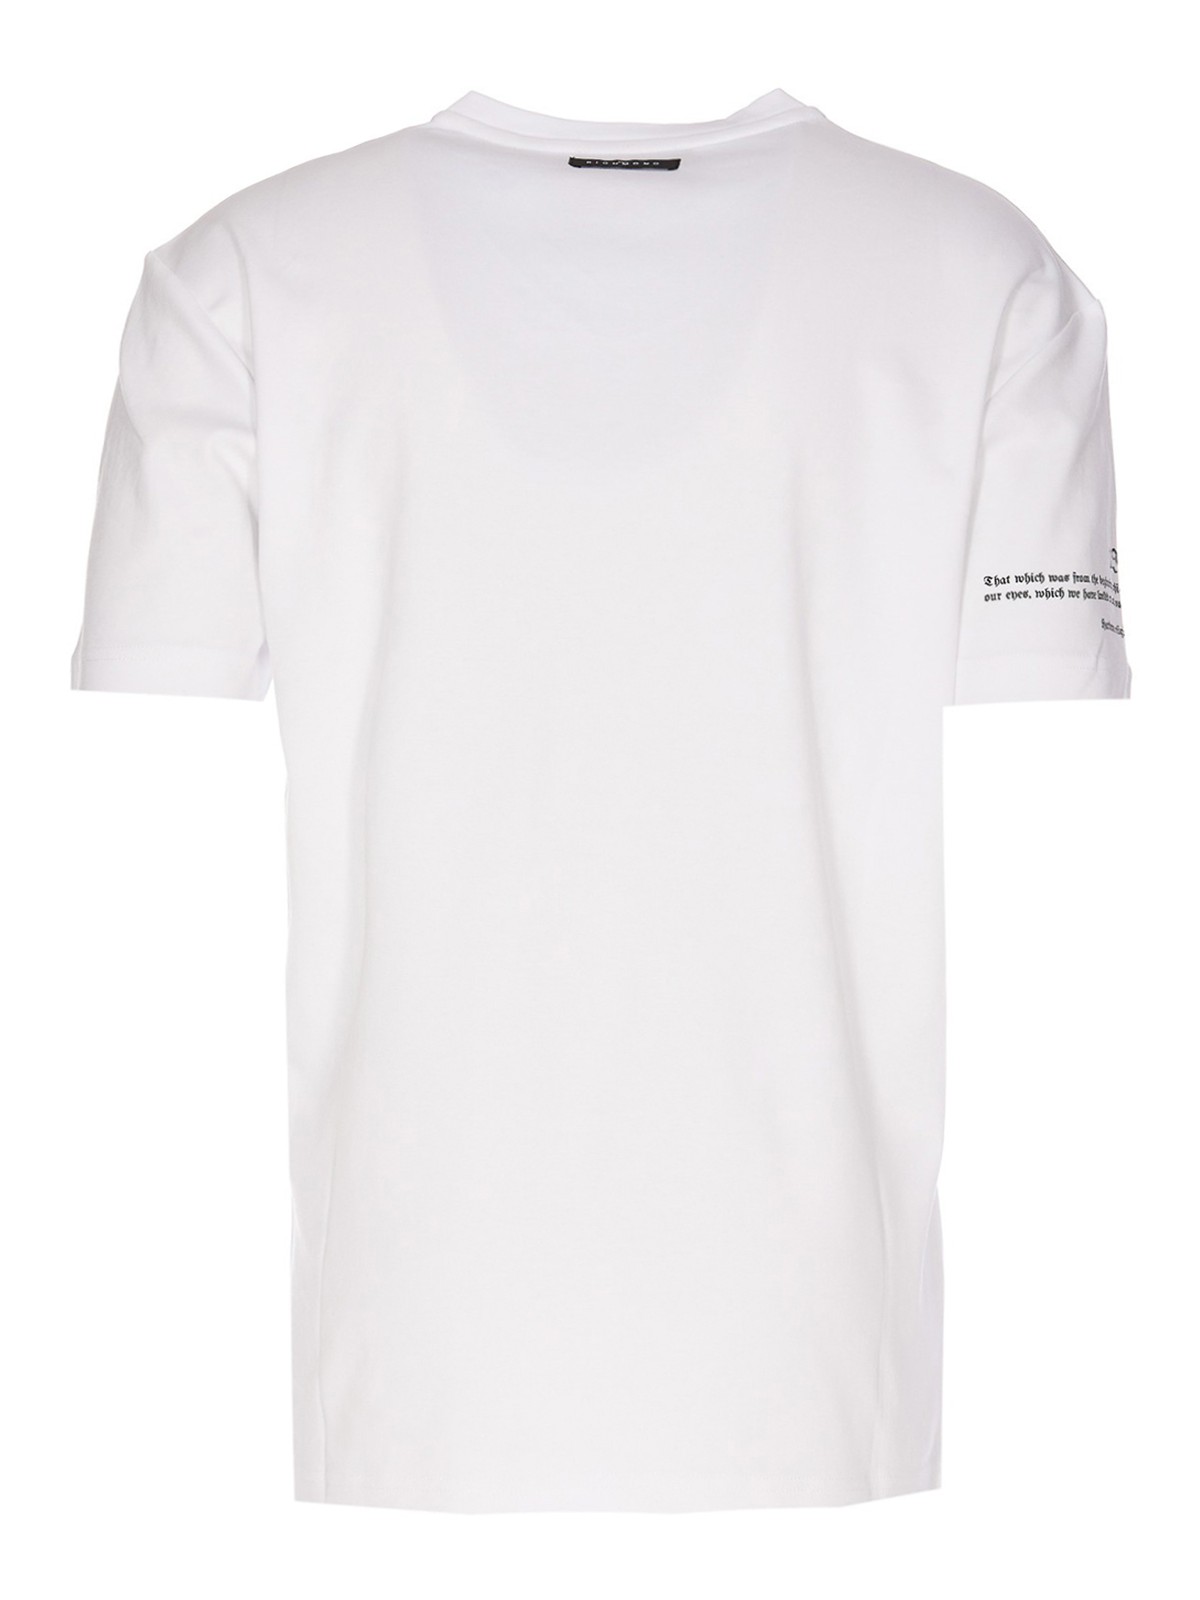 Tシャツ John Richmond - Tシャツ - 白 - RMP23073TSWHITE